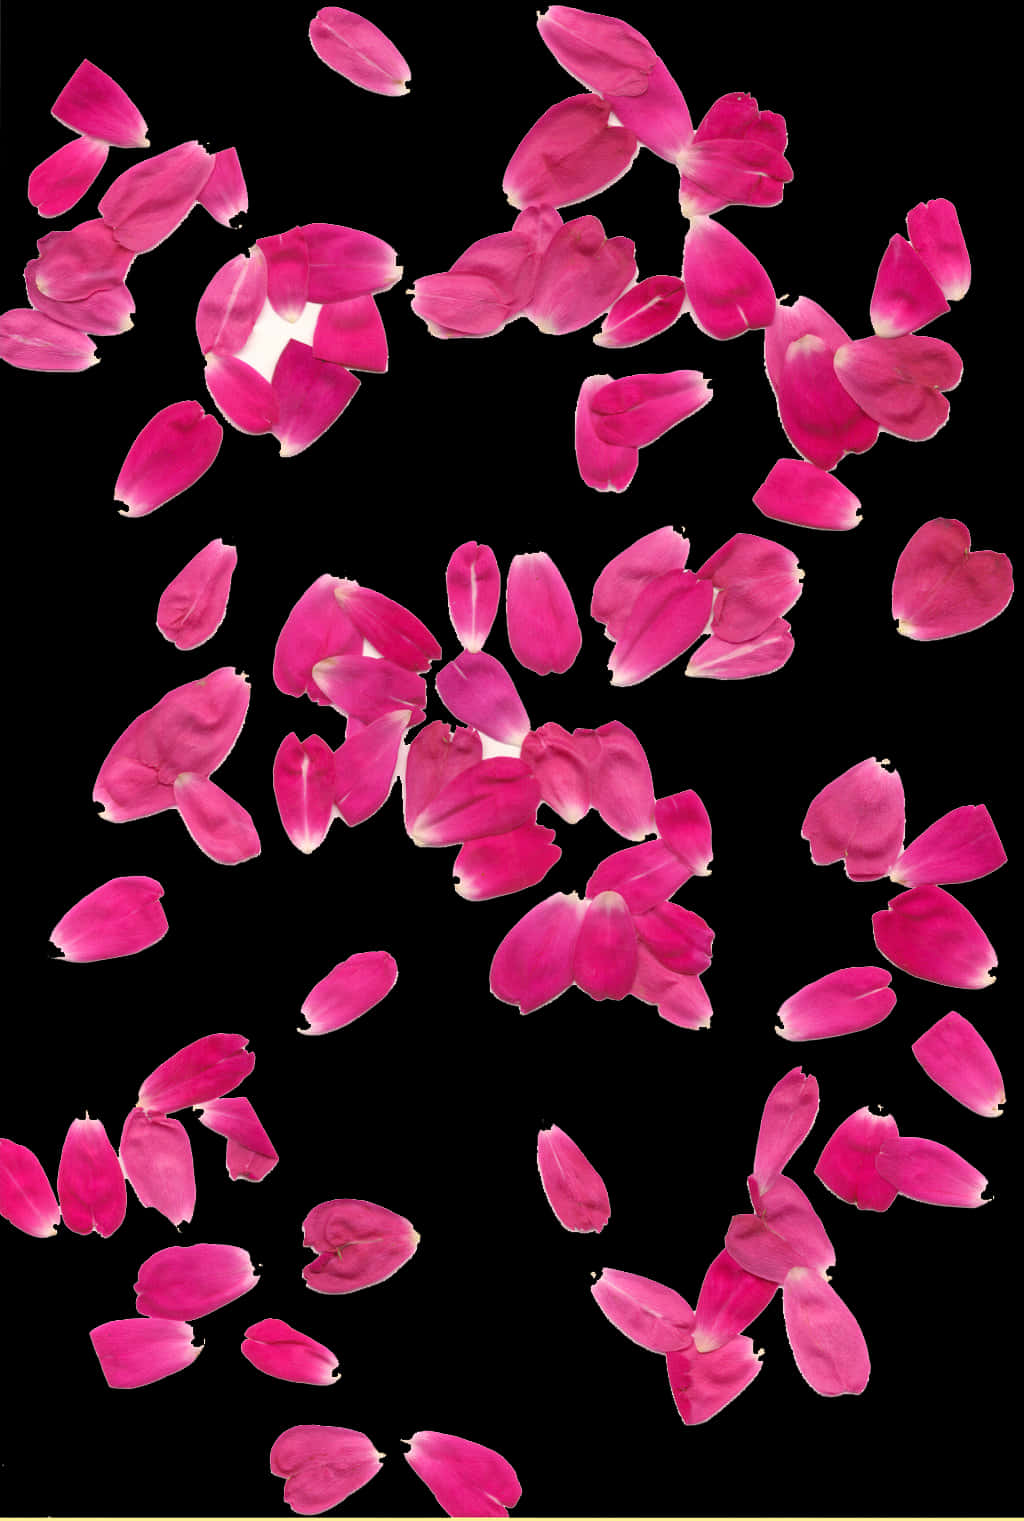 Pink Rose Petals Falling Black Background